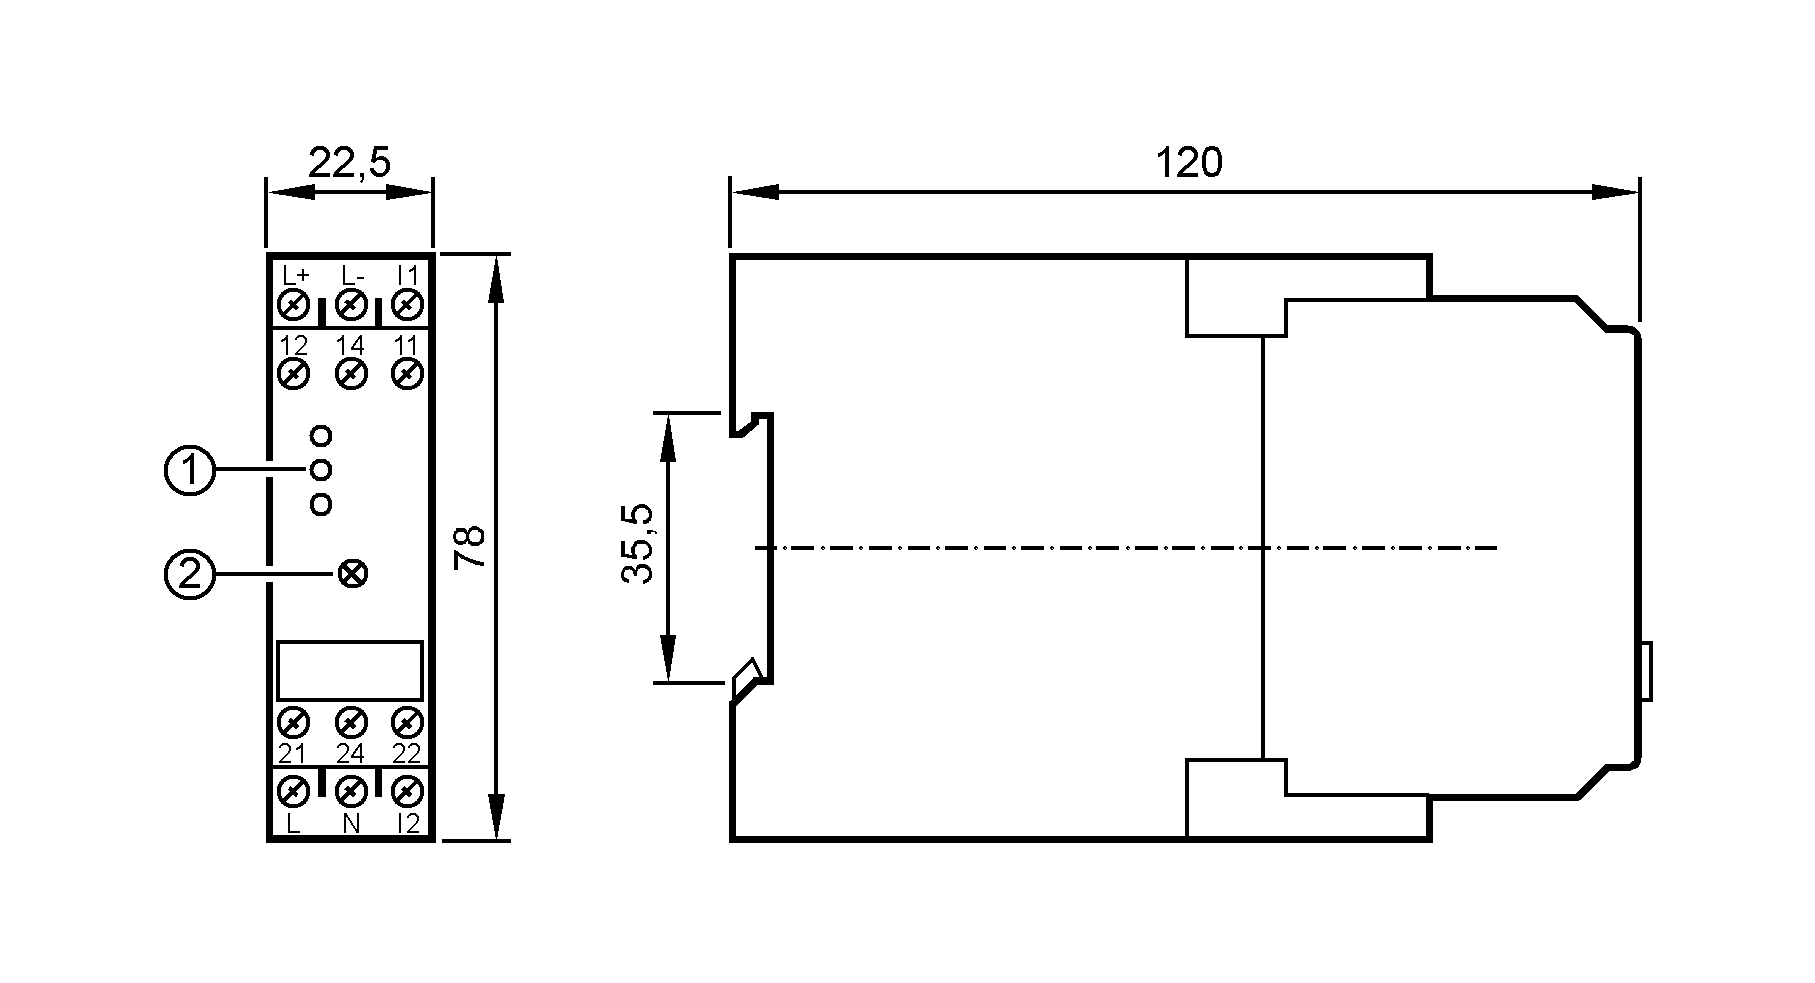 1: 3 светодиода<br/>2: поворотный выключатель (тип датчика)